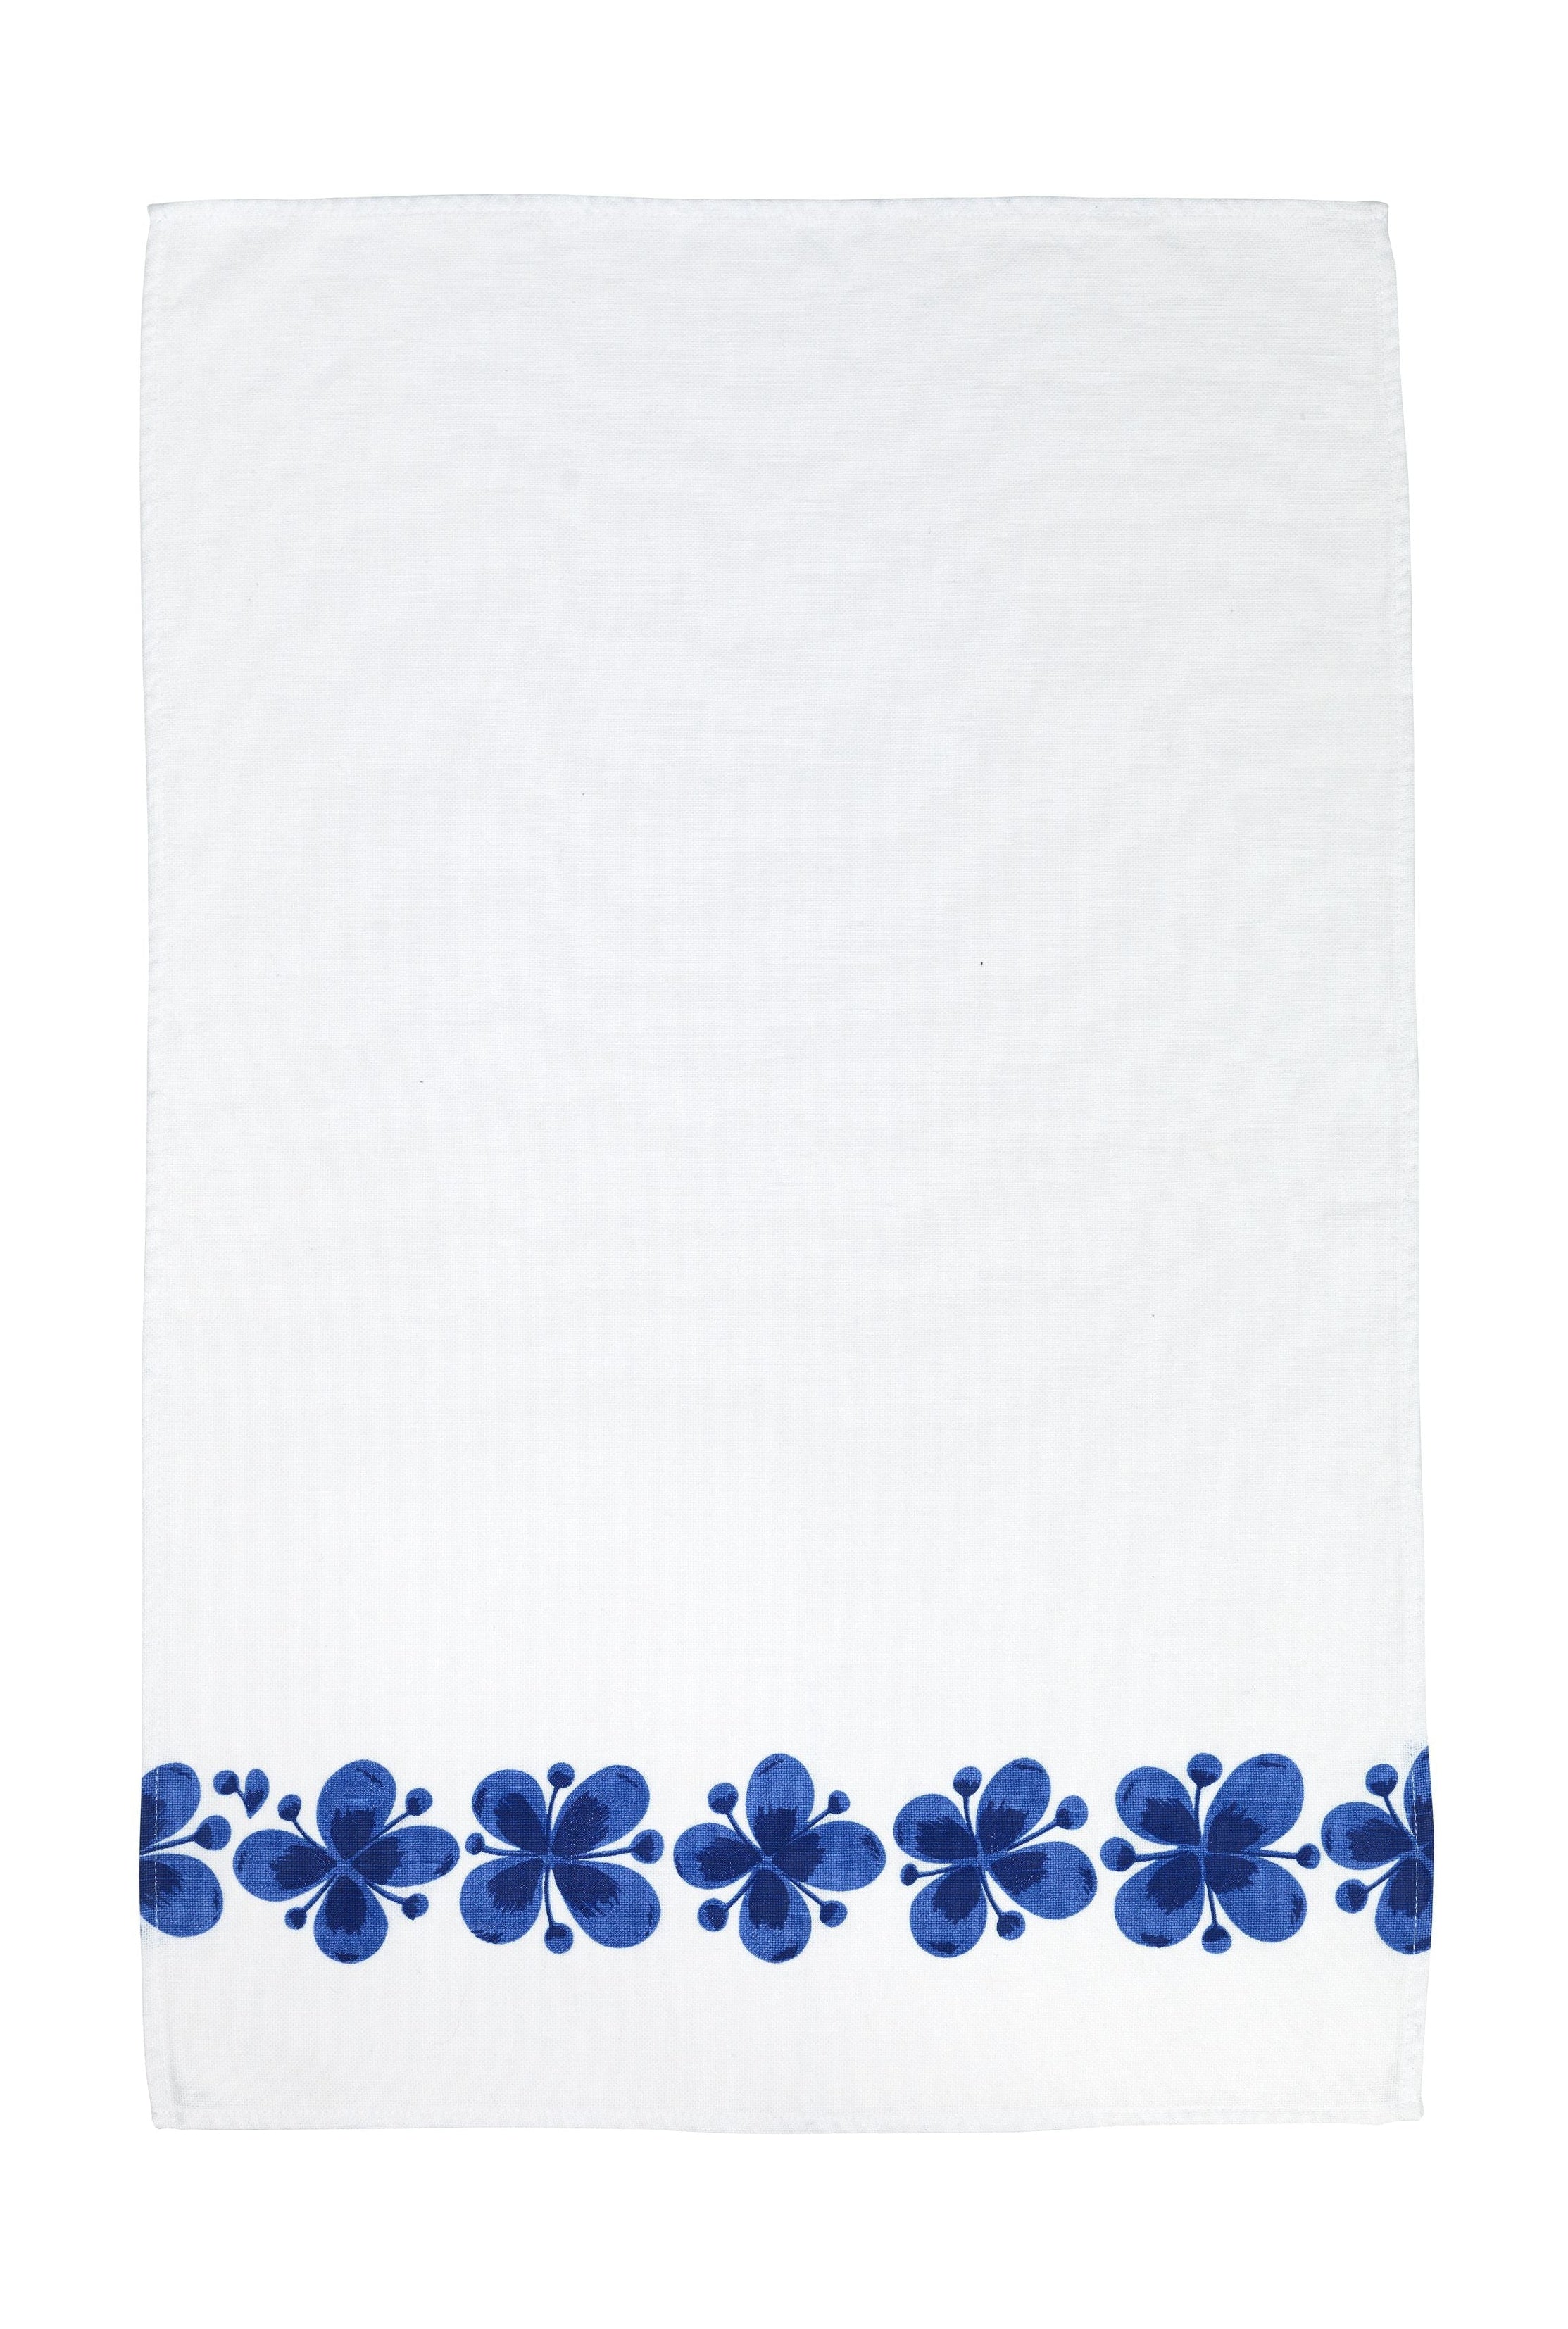 Rörstrand Mon Amie ručník 43 x67 cm